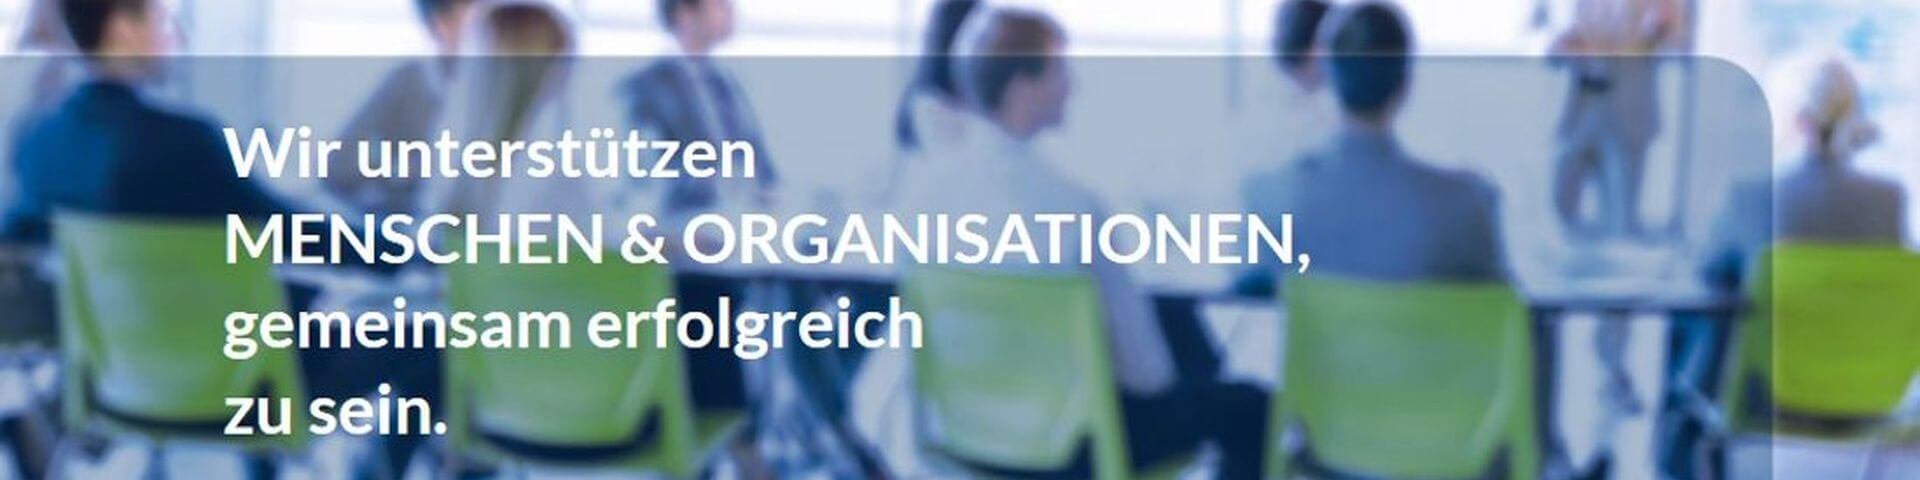 Titelbild von Lehrbetrieb ARGO Personalentwicklung GmbH auf Lehrlingsportal.at